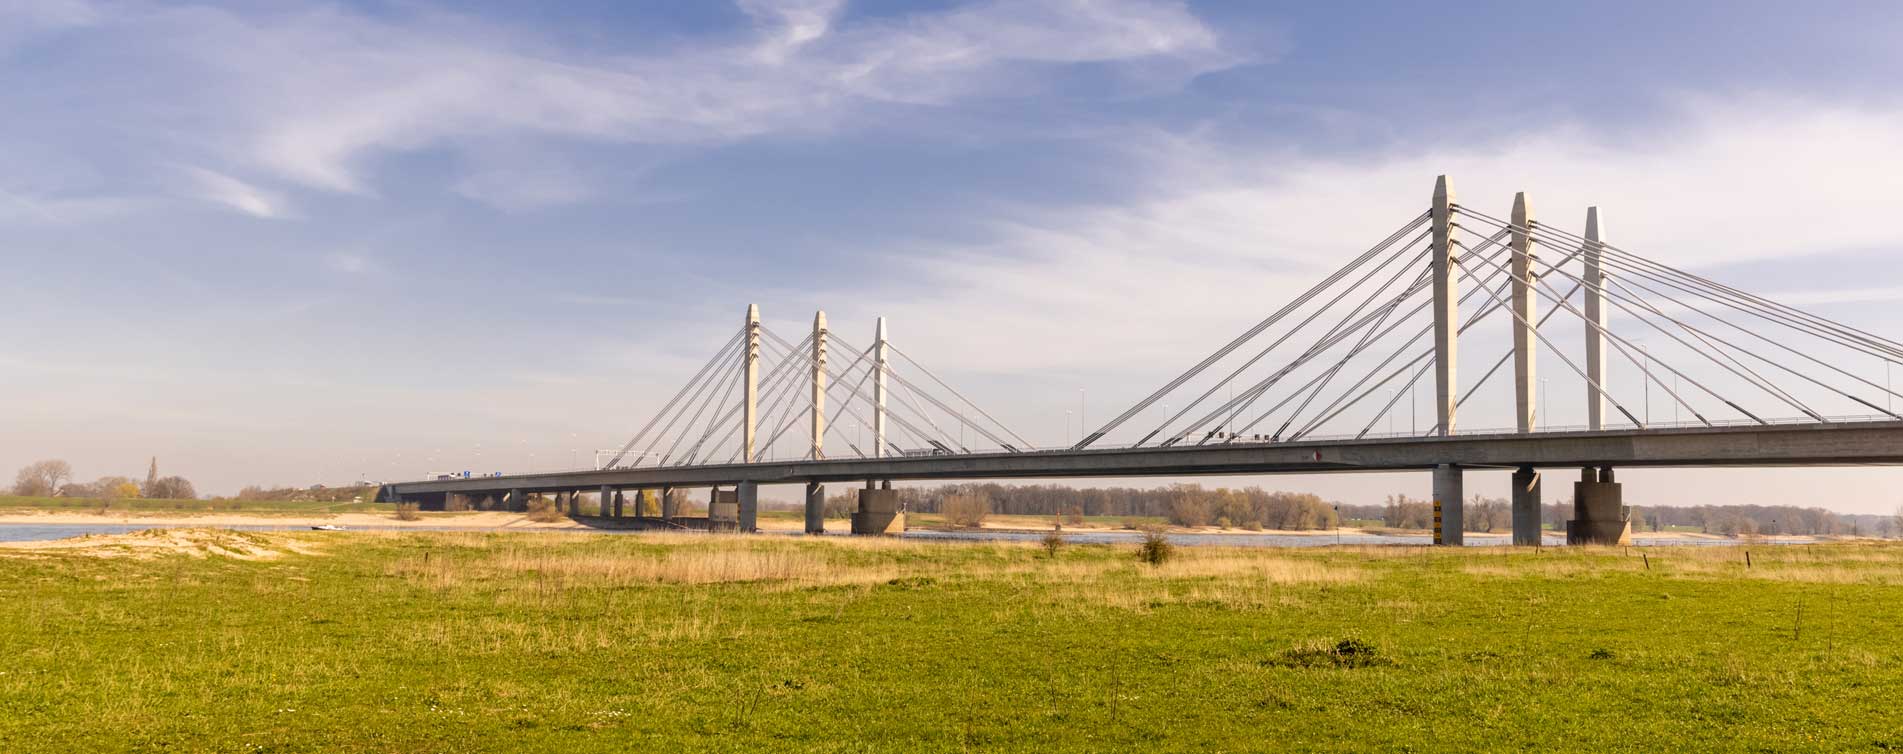 Tacitus brug bij Ewijk - Hock Assurantiën